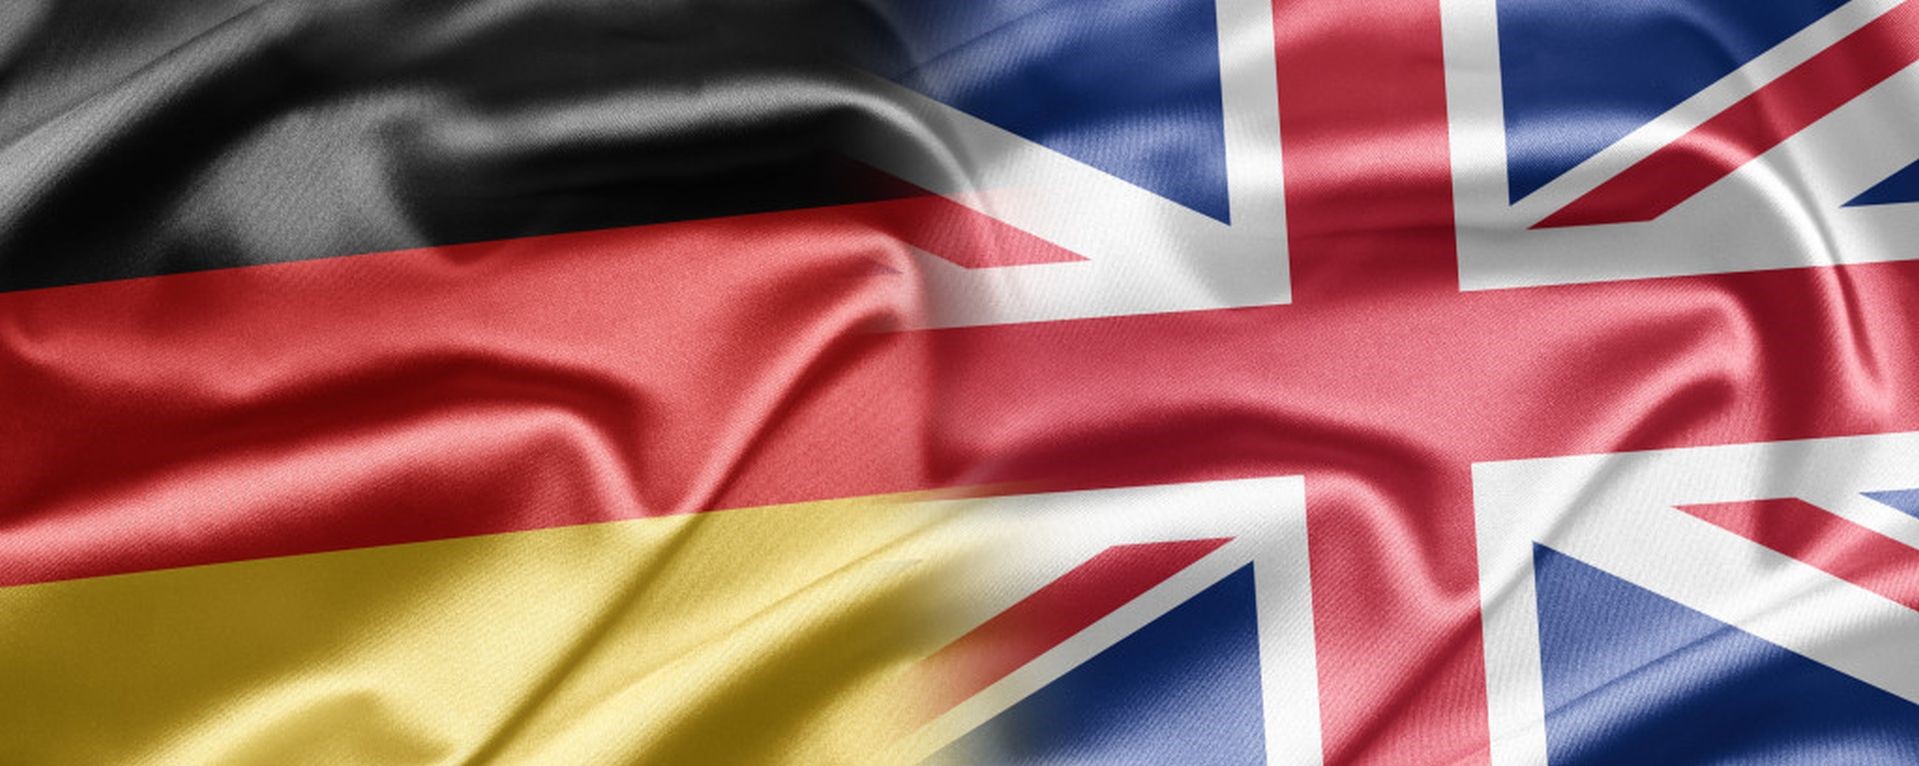 Английский и немецкий флаги вместе